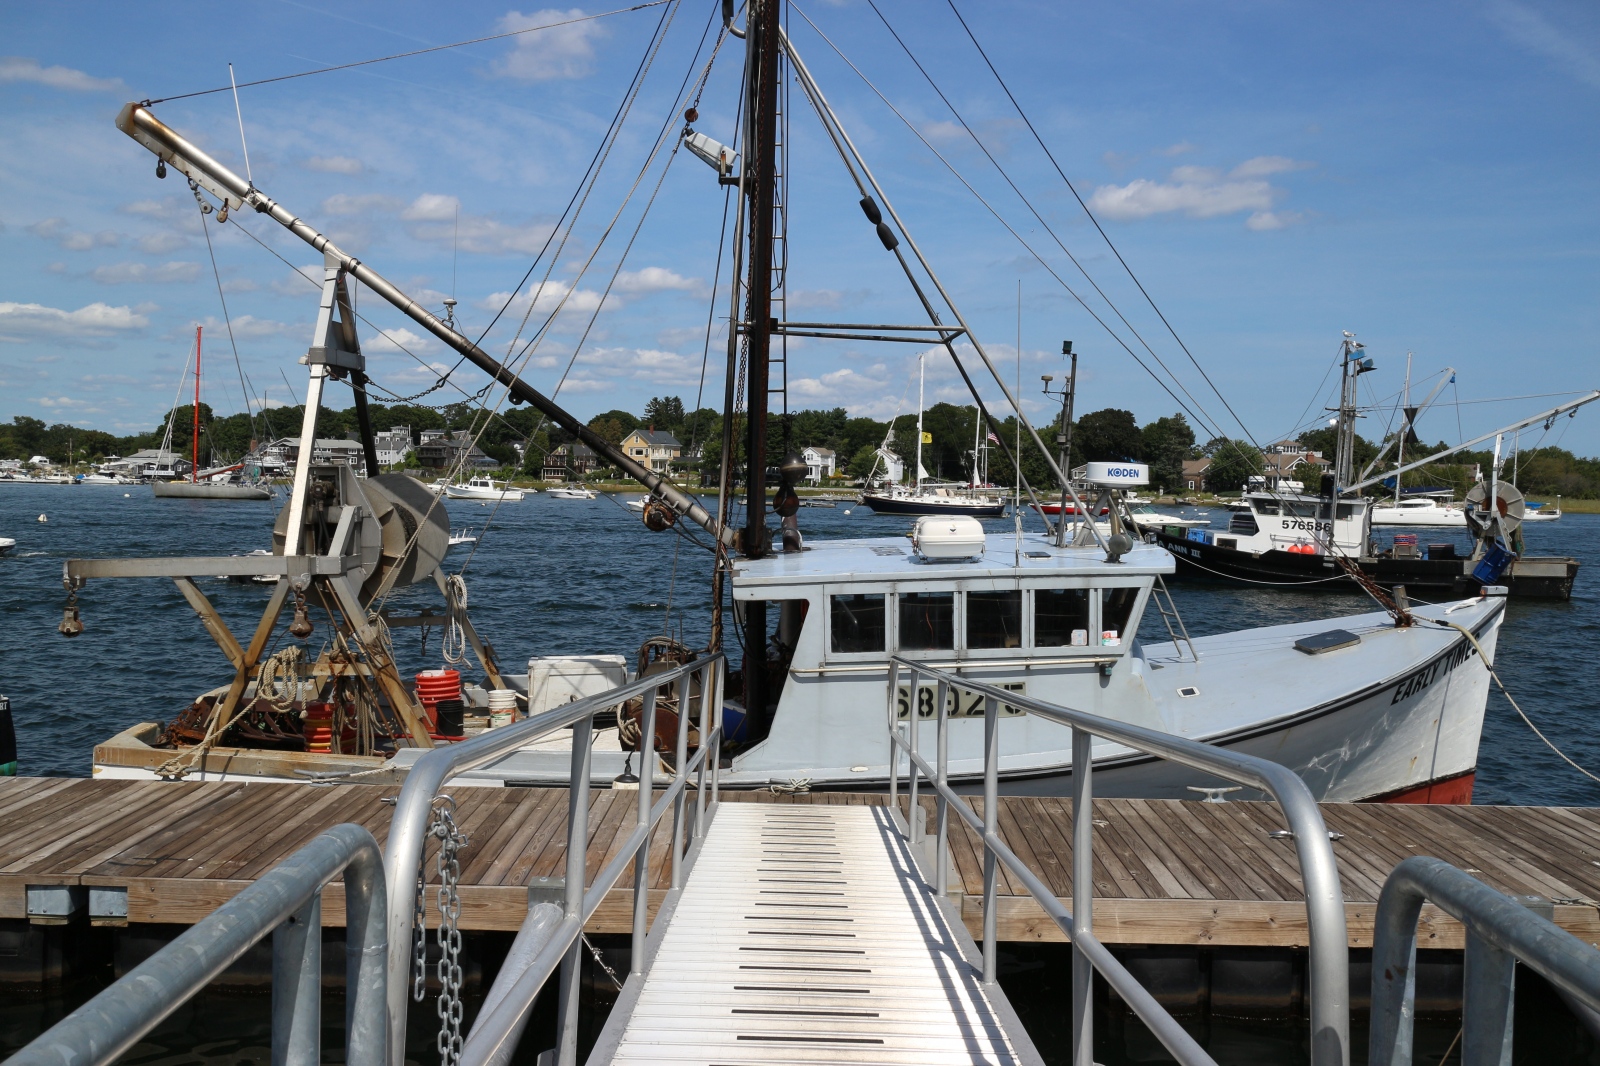 At the Water's Edge - Fishing Boat, Newburtport, MassachusettsÂ